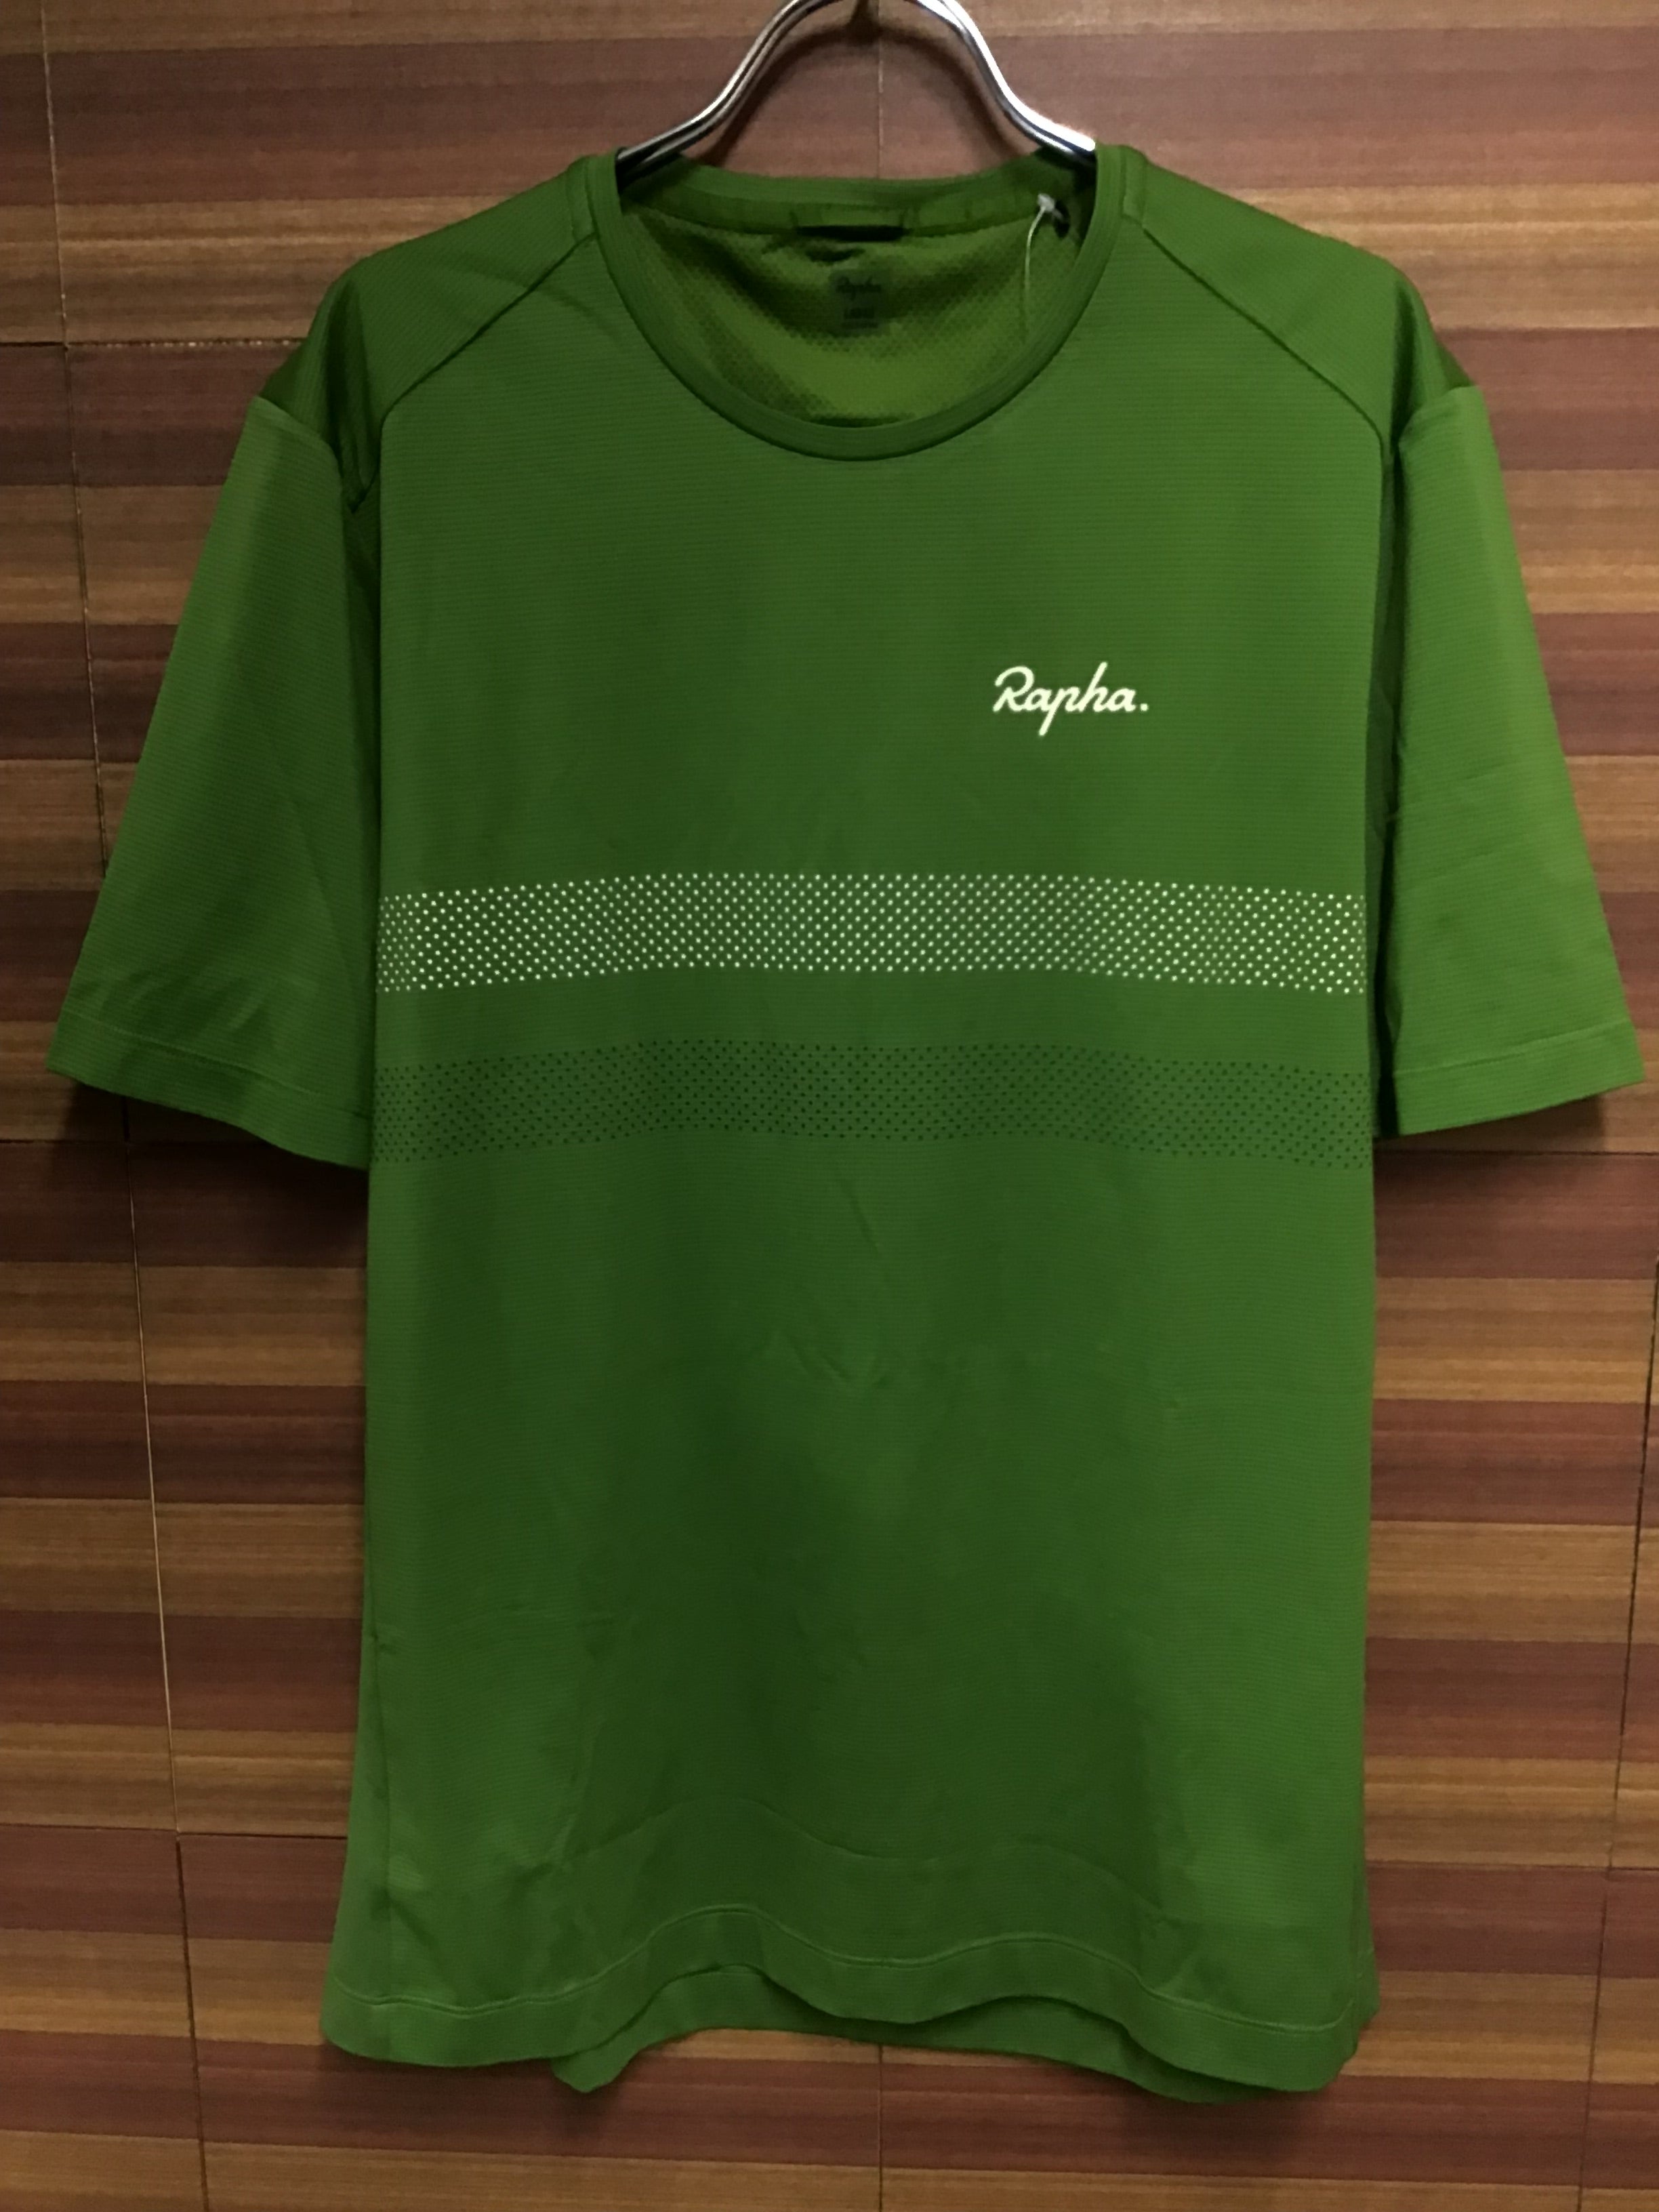 HK470 ラファ Rapha エクスプロア テクニカルTシャツ EXPLORE TECHNICAL T-SHIRT 半袖 緑 L